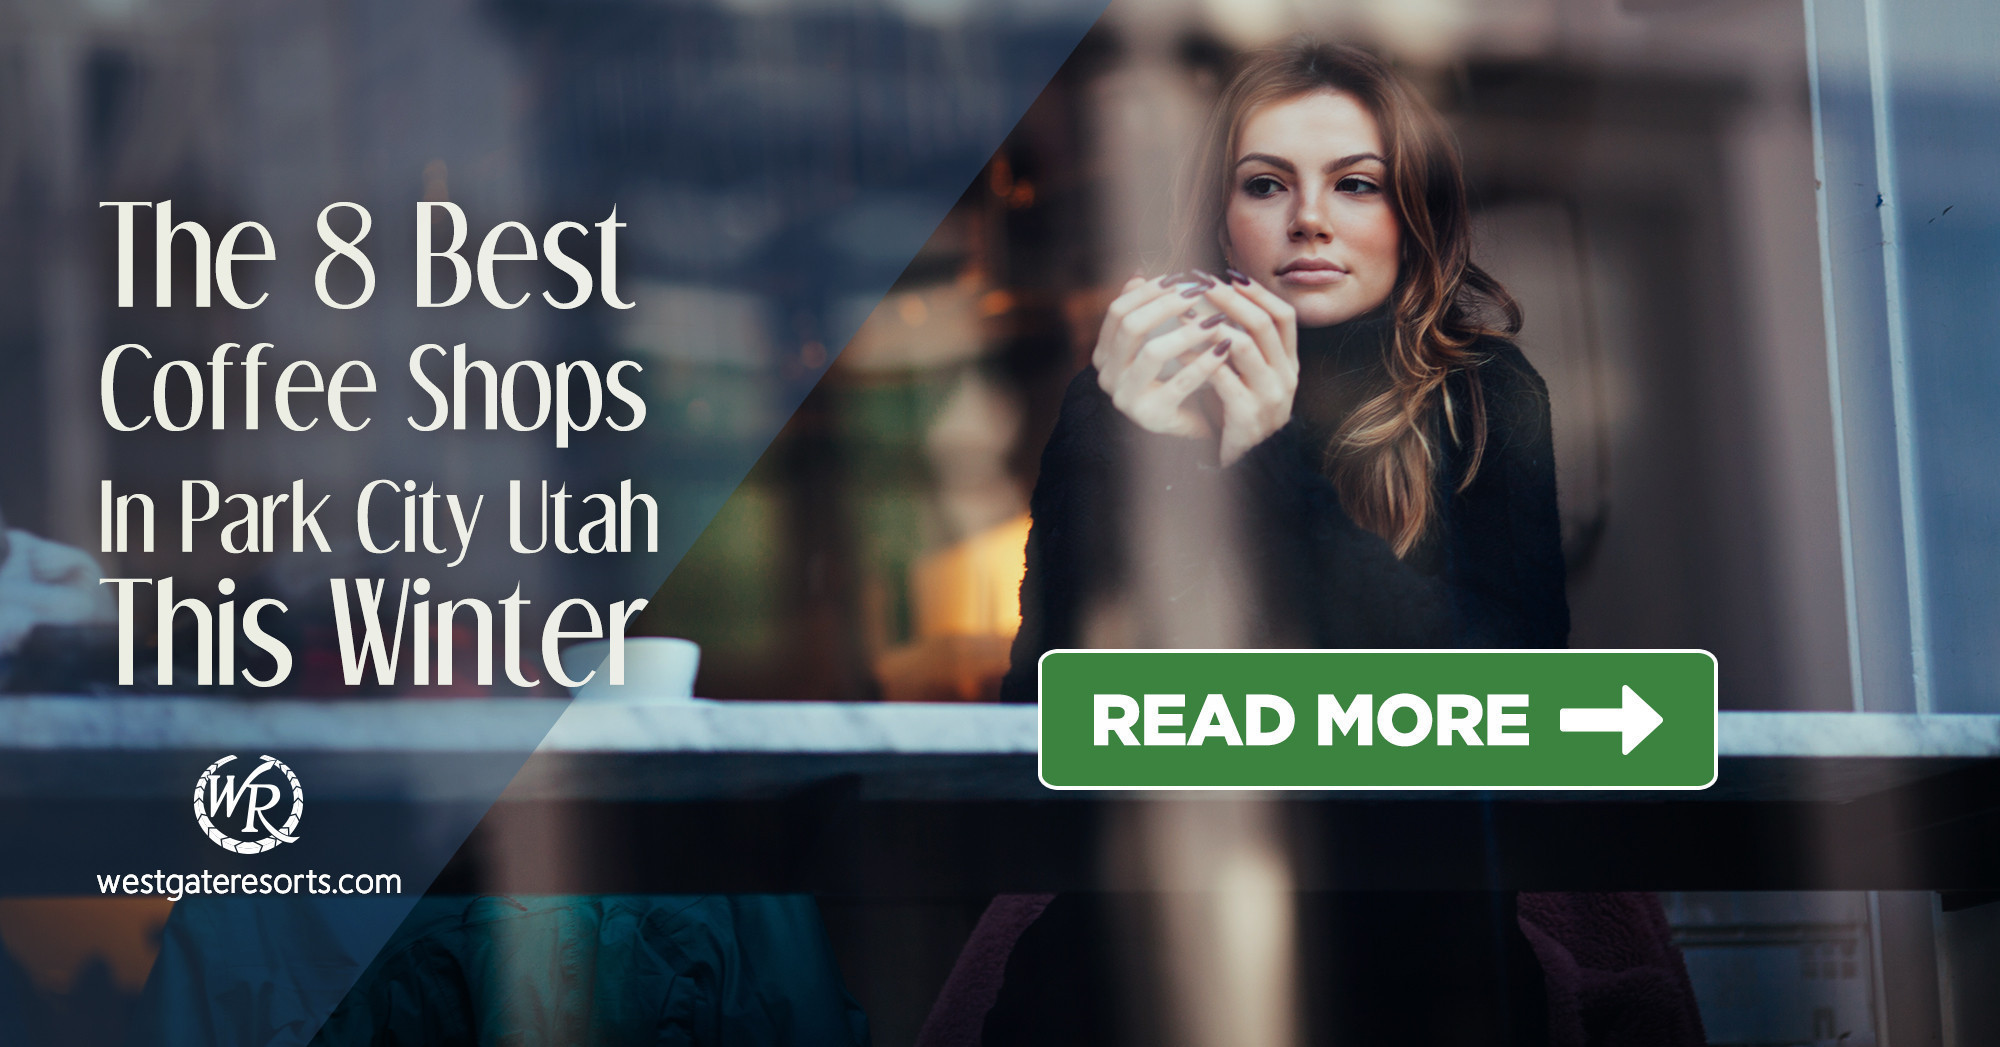 Las 8 mejores cafeterías en Park City Utah este invierno | Cafeterías de Park City